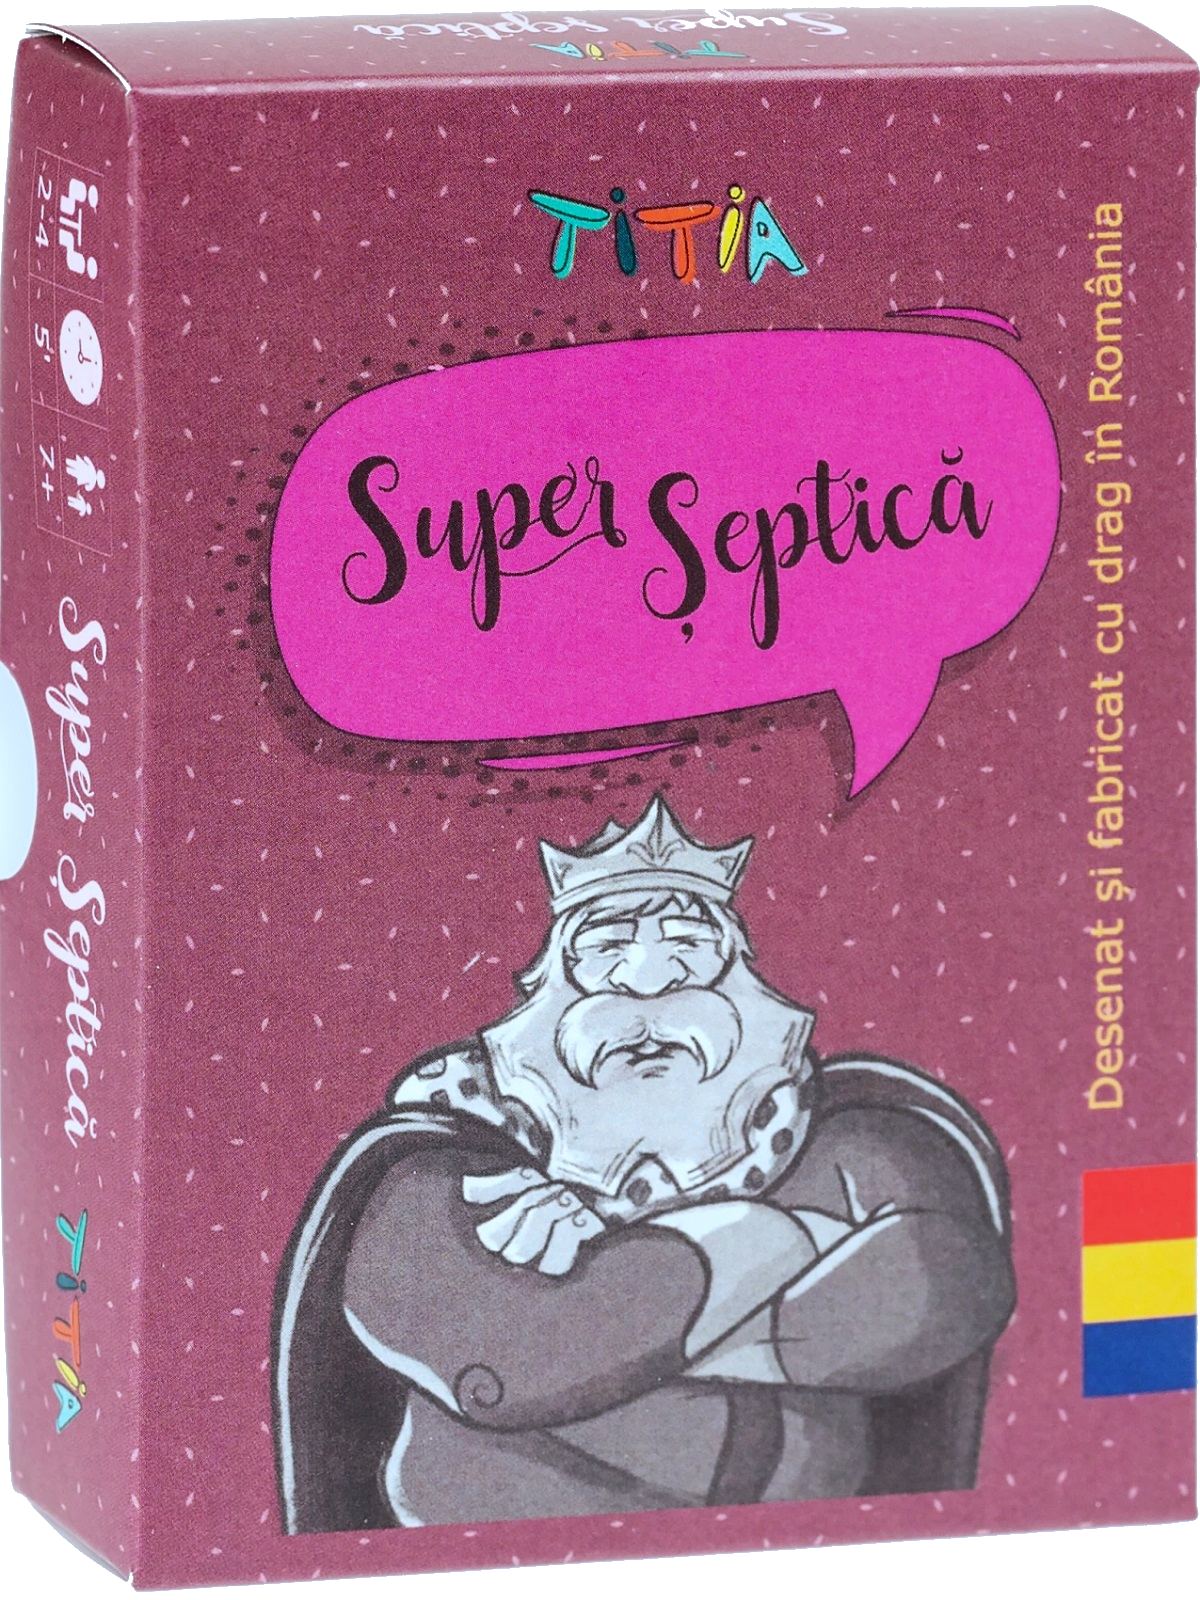 Carti de joc: Super Septica